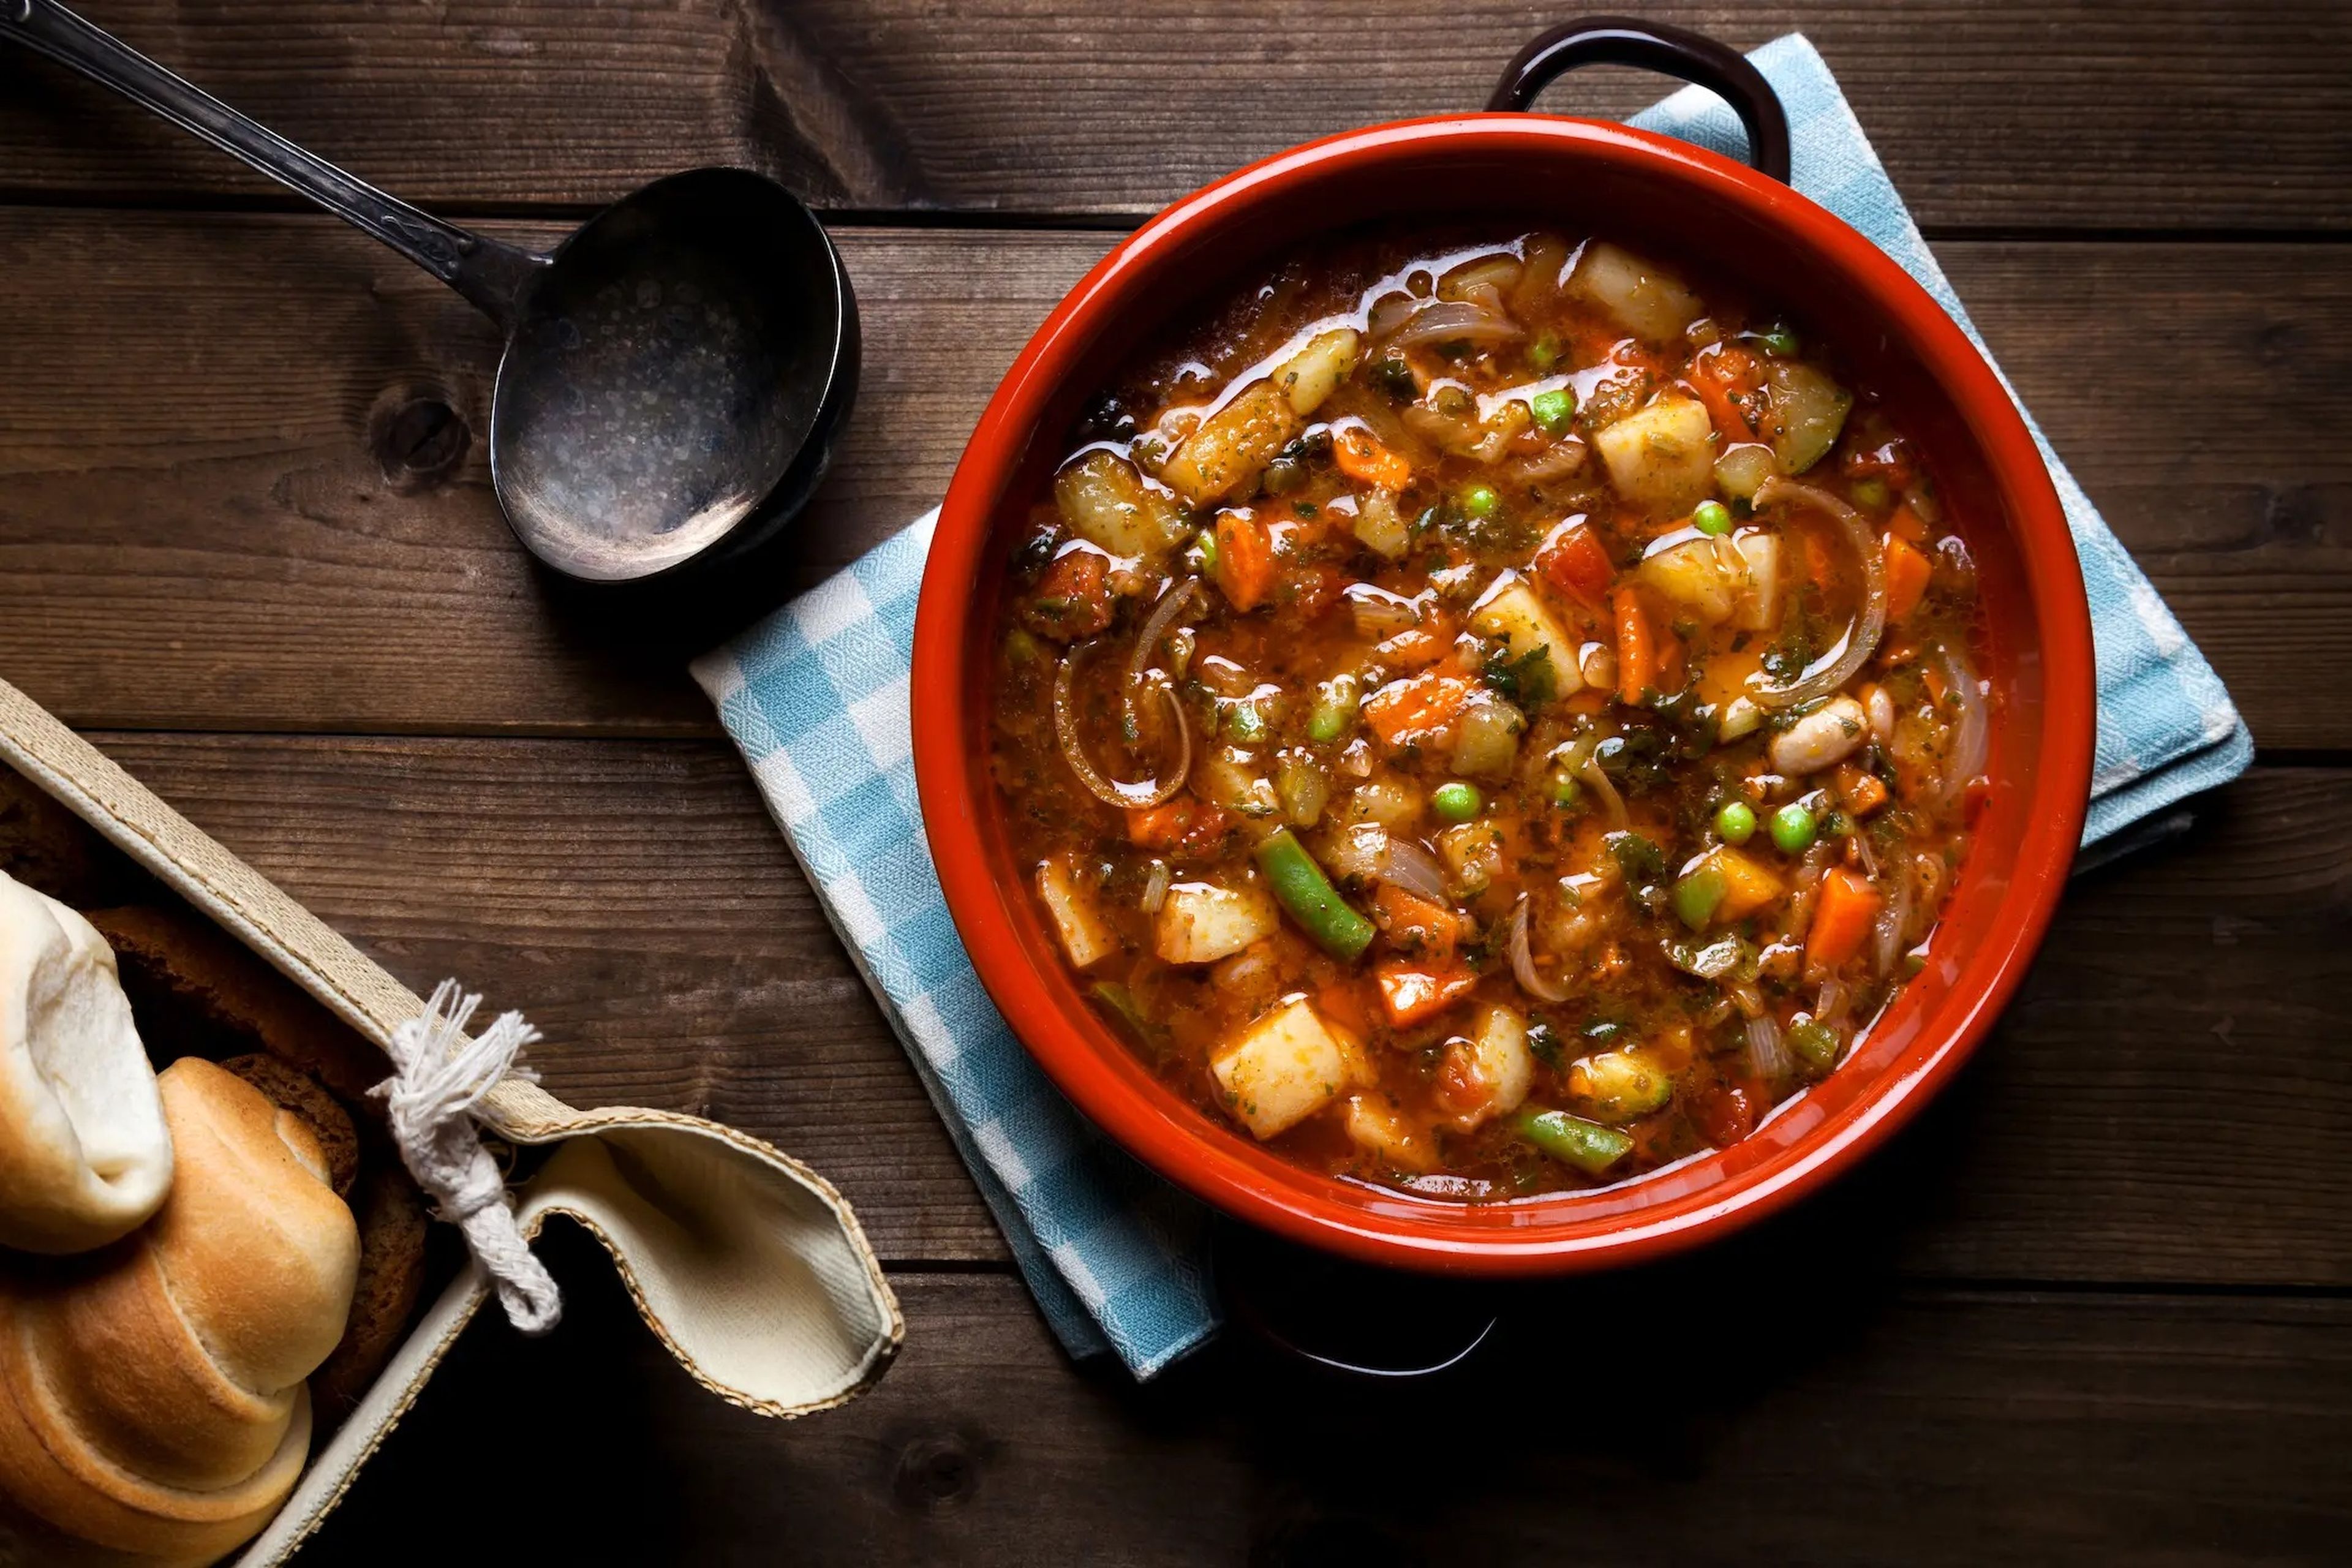 A Buettner le encanta cocinar sopa Minestrone en una olla de cocción lenta. Esta receta combina legumbres, vegetales y sabrosas especias.